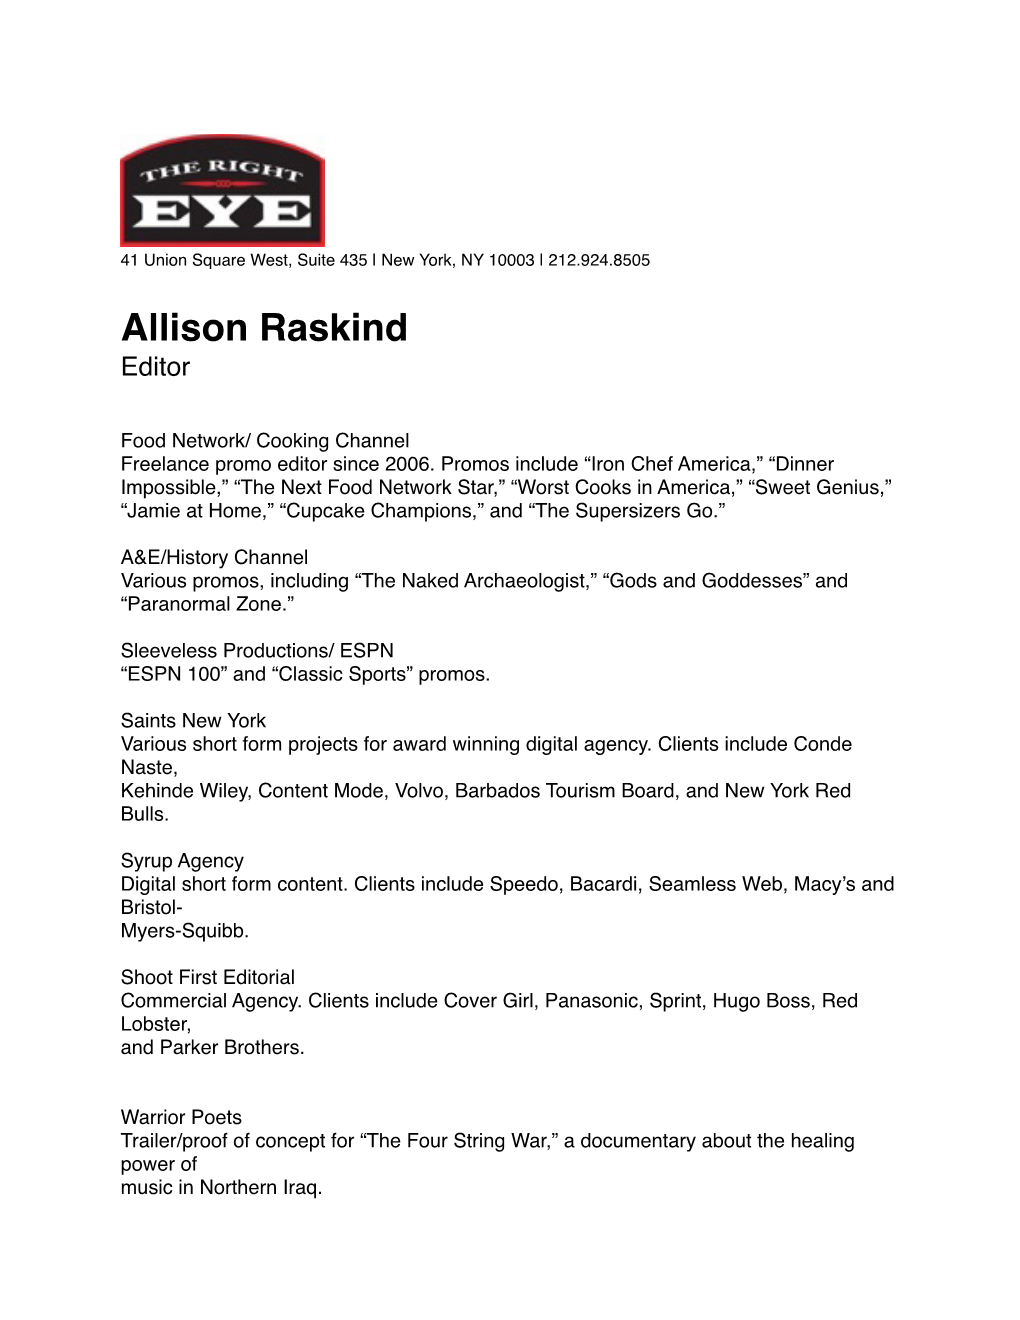 Allison Raskind Resume